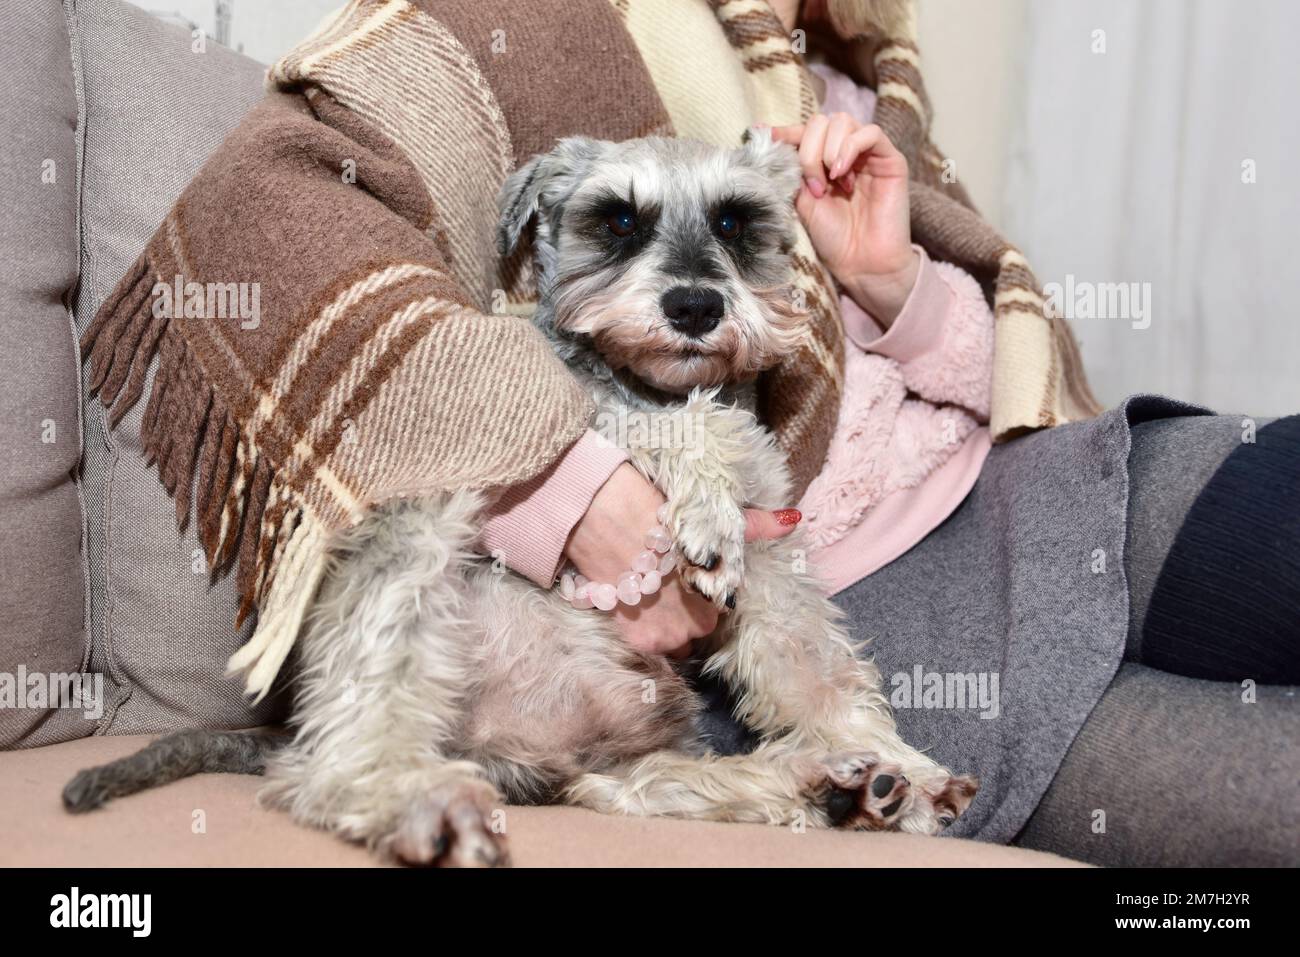 Le chien schnauzer gris est assis sur un canapé et regarde sa maîtresse bien-aimée, les mains des femmes ont un chien heureux. Banque D'Images